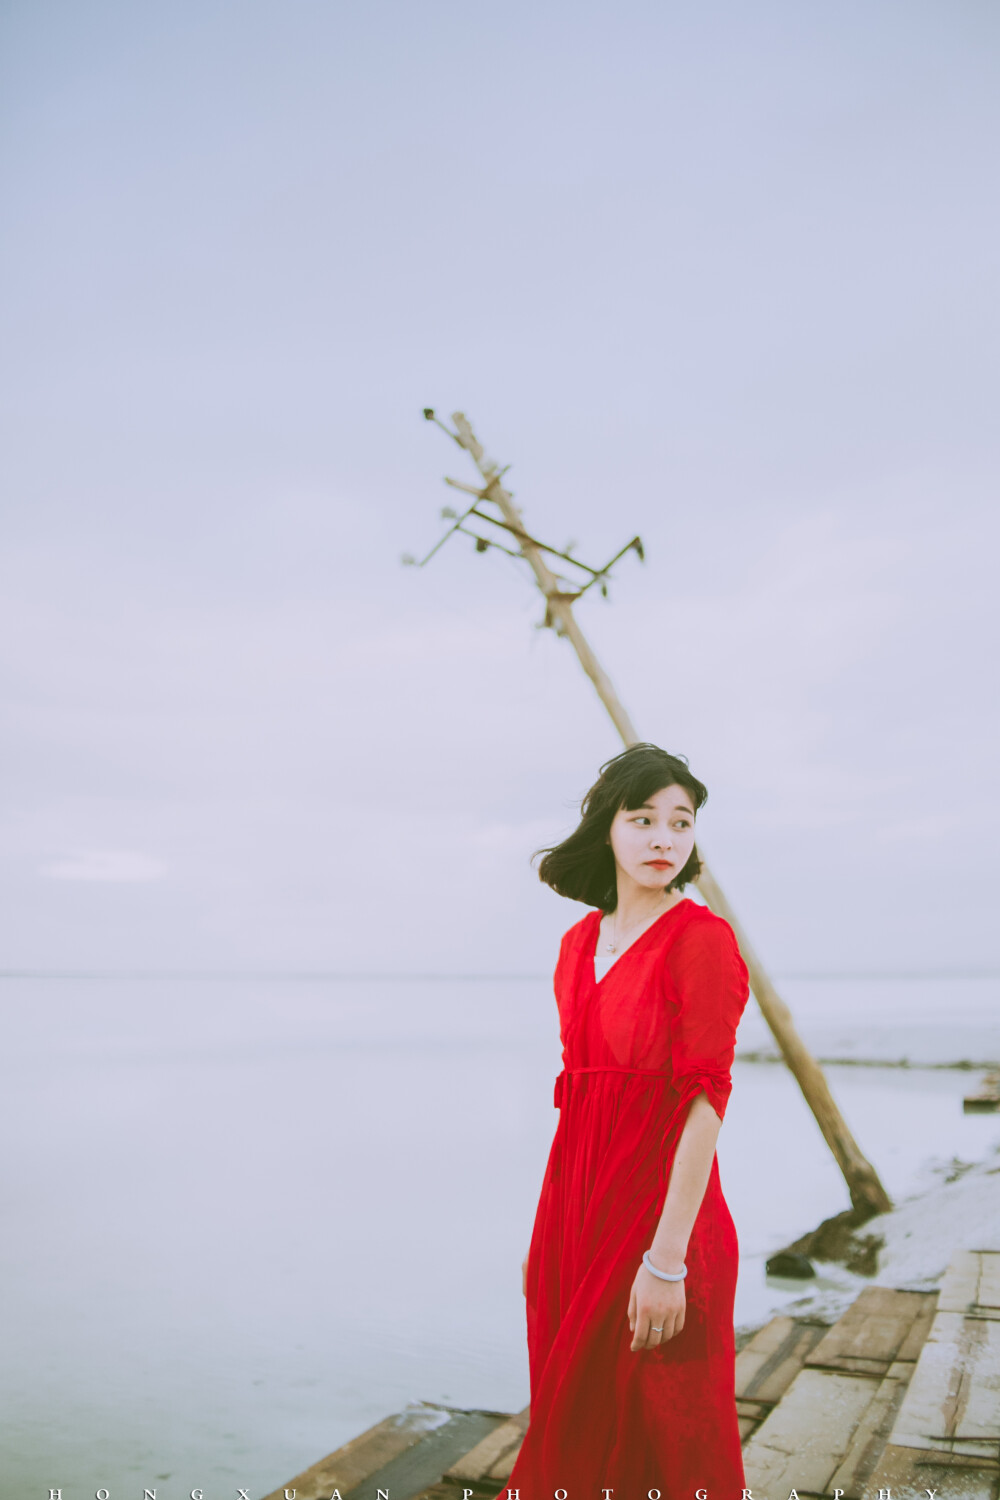 茶卡的风吹起你的红裙子 摄影:洪小漩 出镜:花花 茶卡盐湖,天空之境